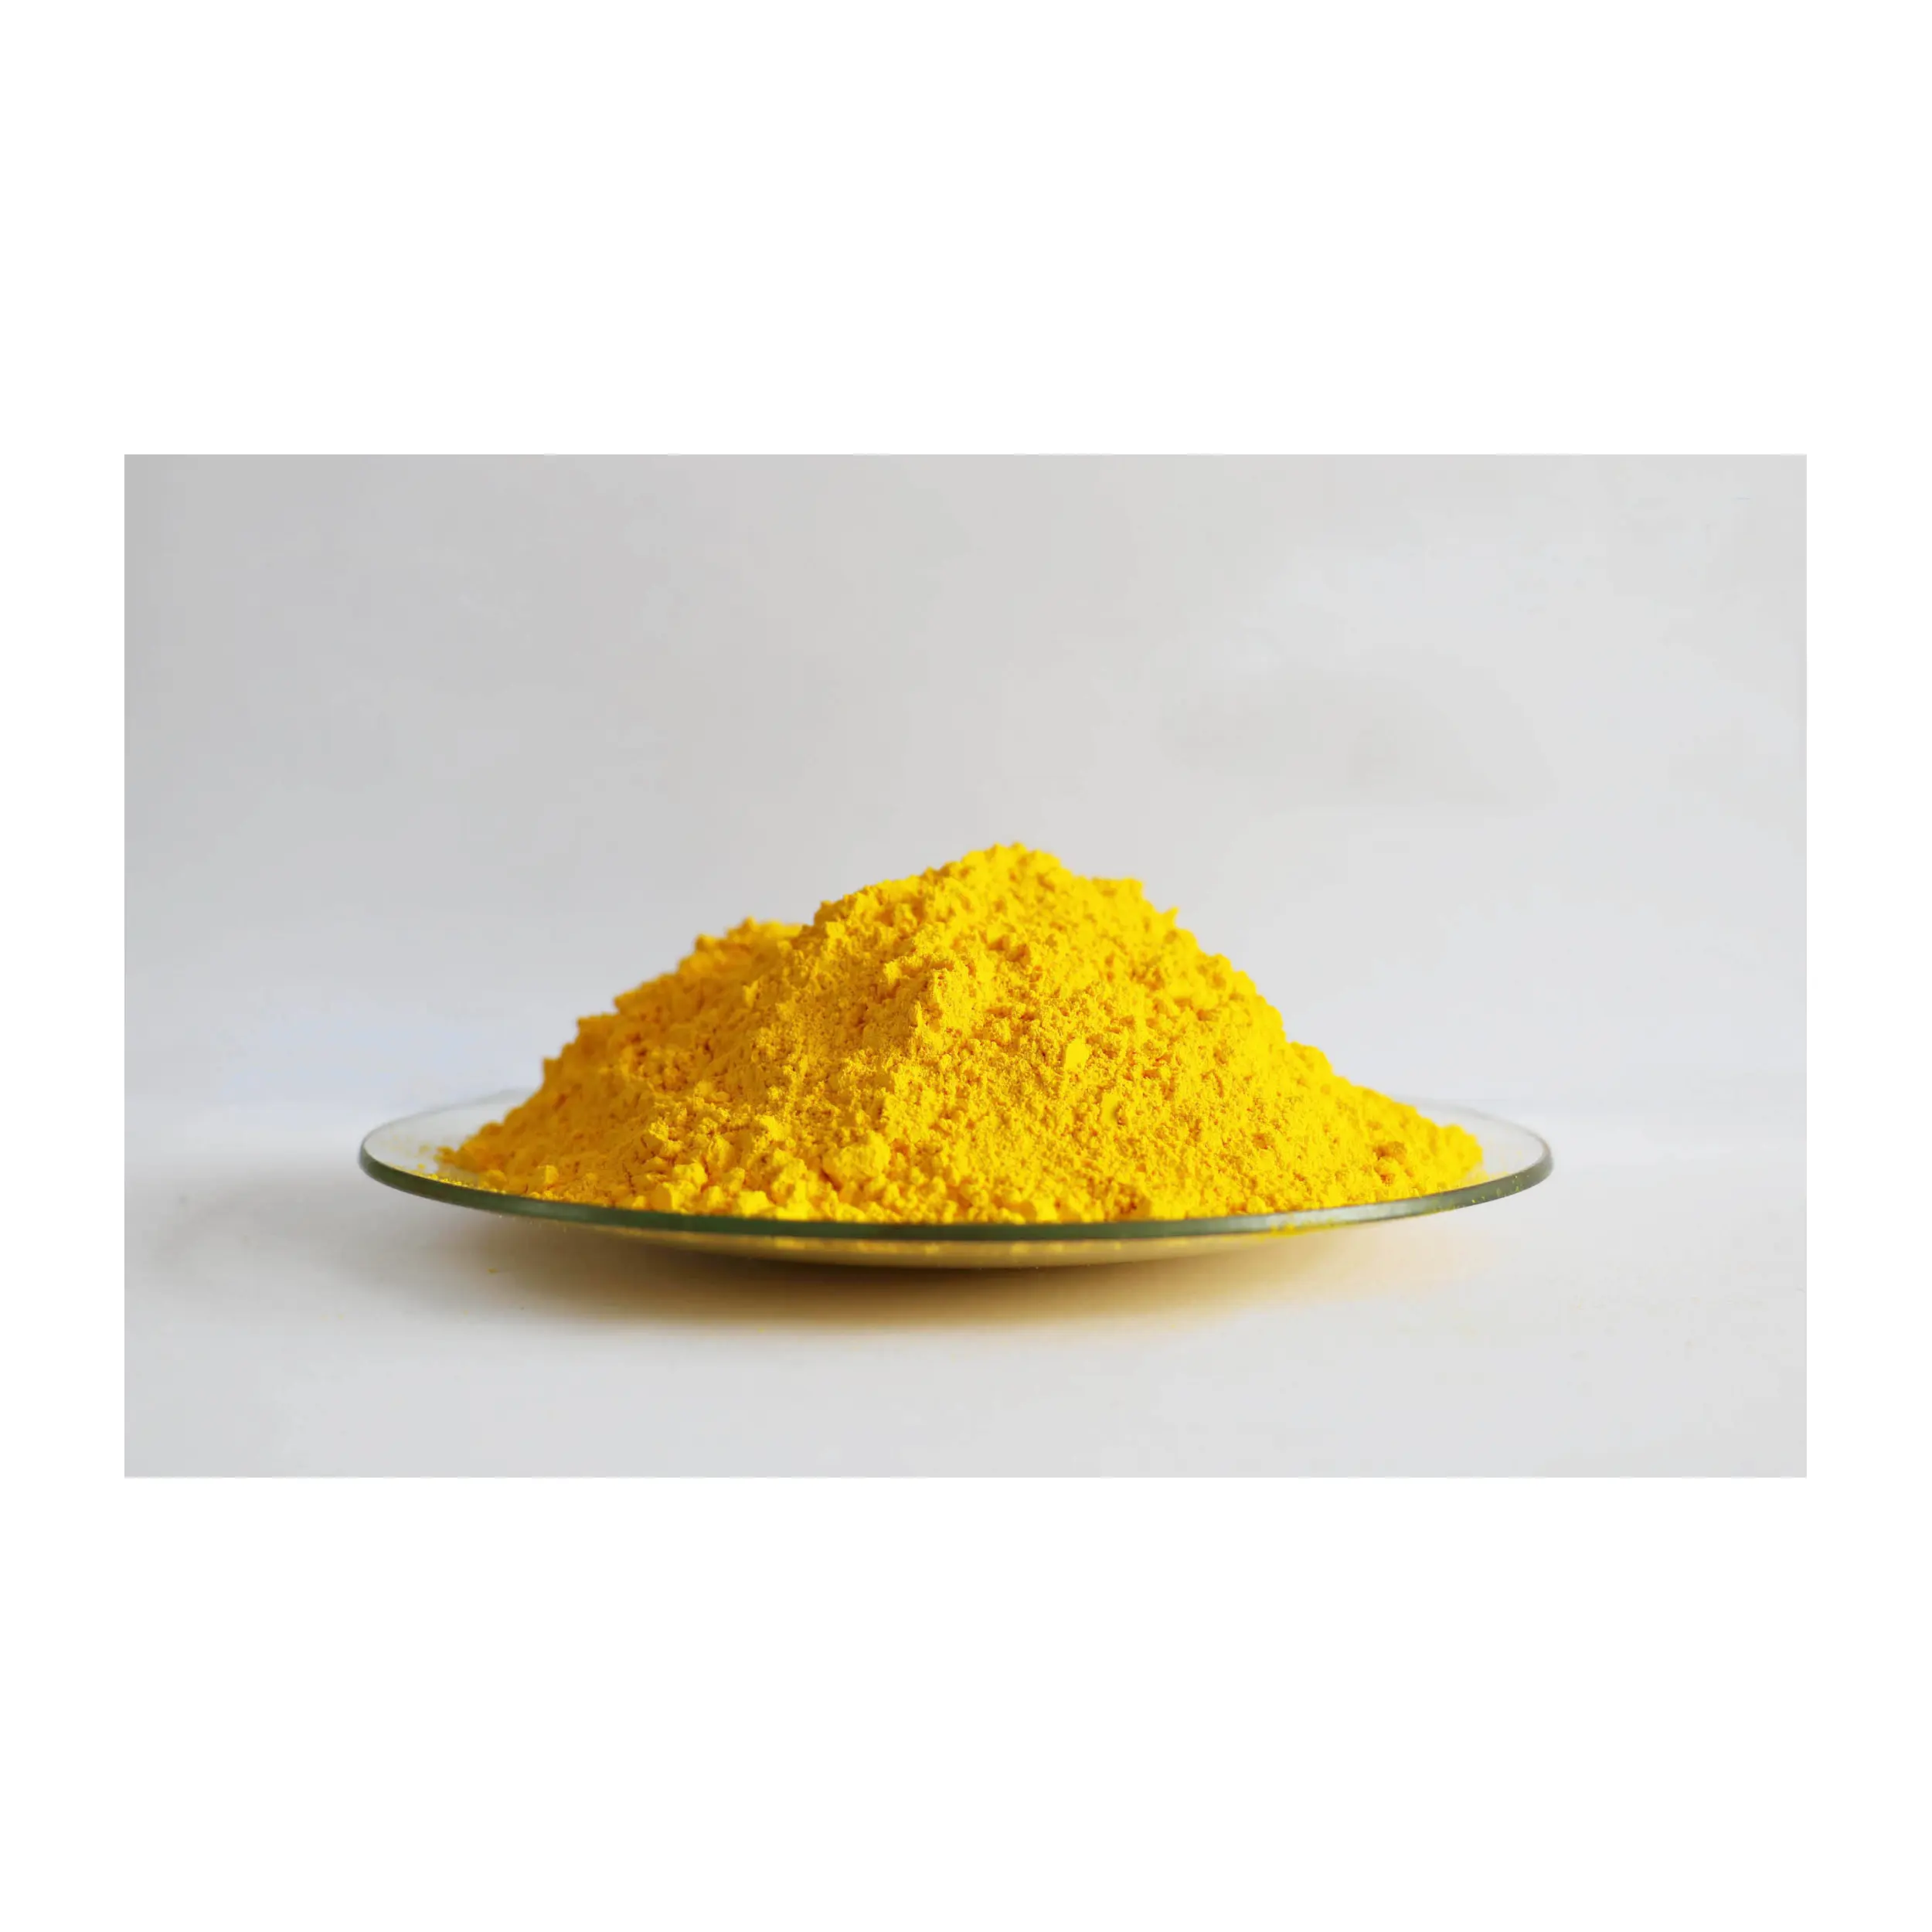 CAS 8007-18-9เม็ดสีเหลือง53 (K1011FG สีเหลืองไทเทเนียม) สำหรับพลาสติกสีหมึกเคลือบเซรามิก